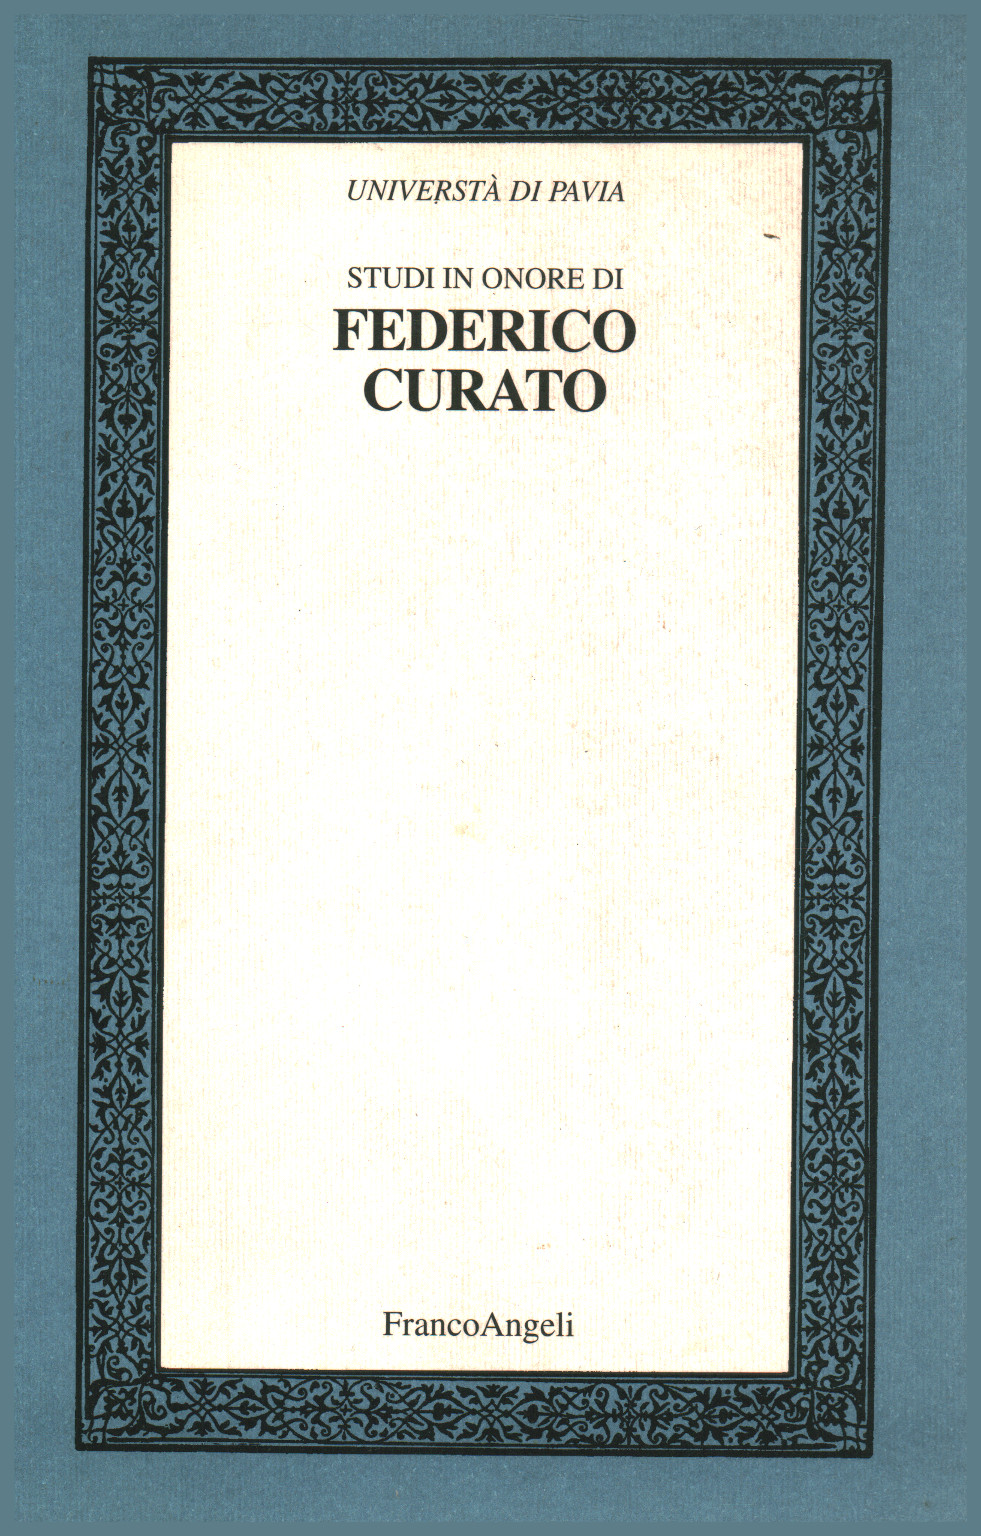 Studi in onore di Federico Curato Volume II, s.a.